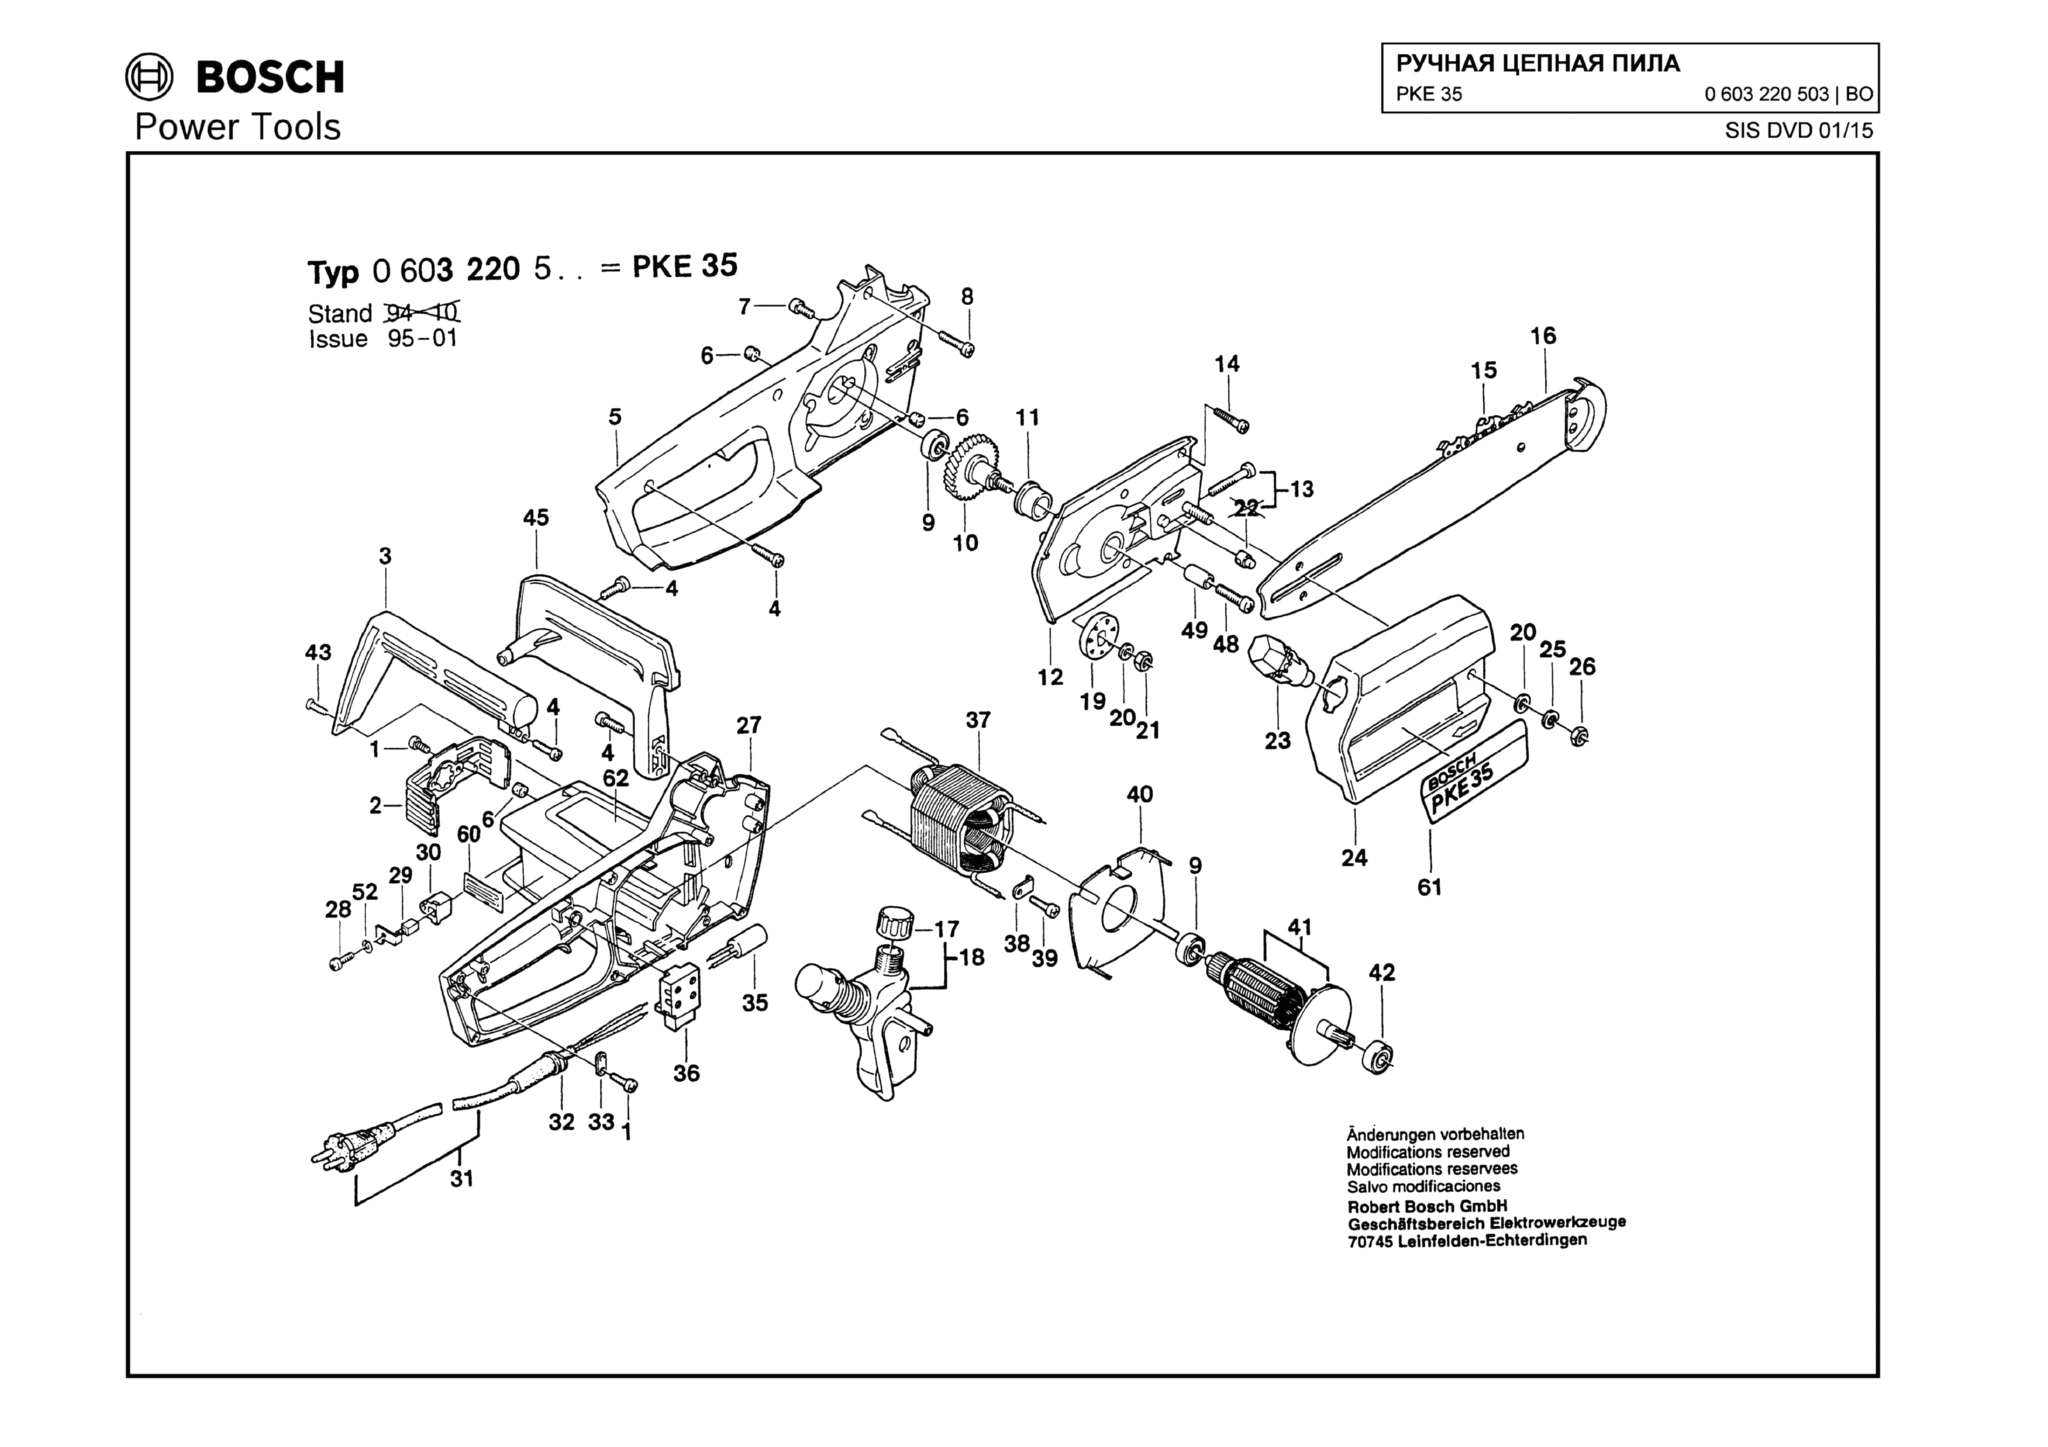 Запчасти, схема и деталировка Bosch PKE 35 (ТИП 0603220503)